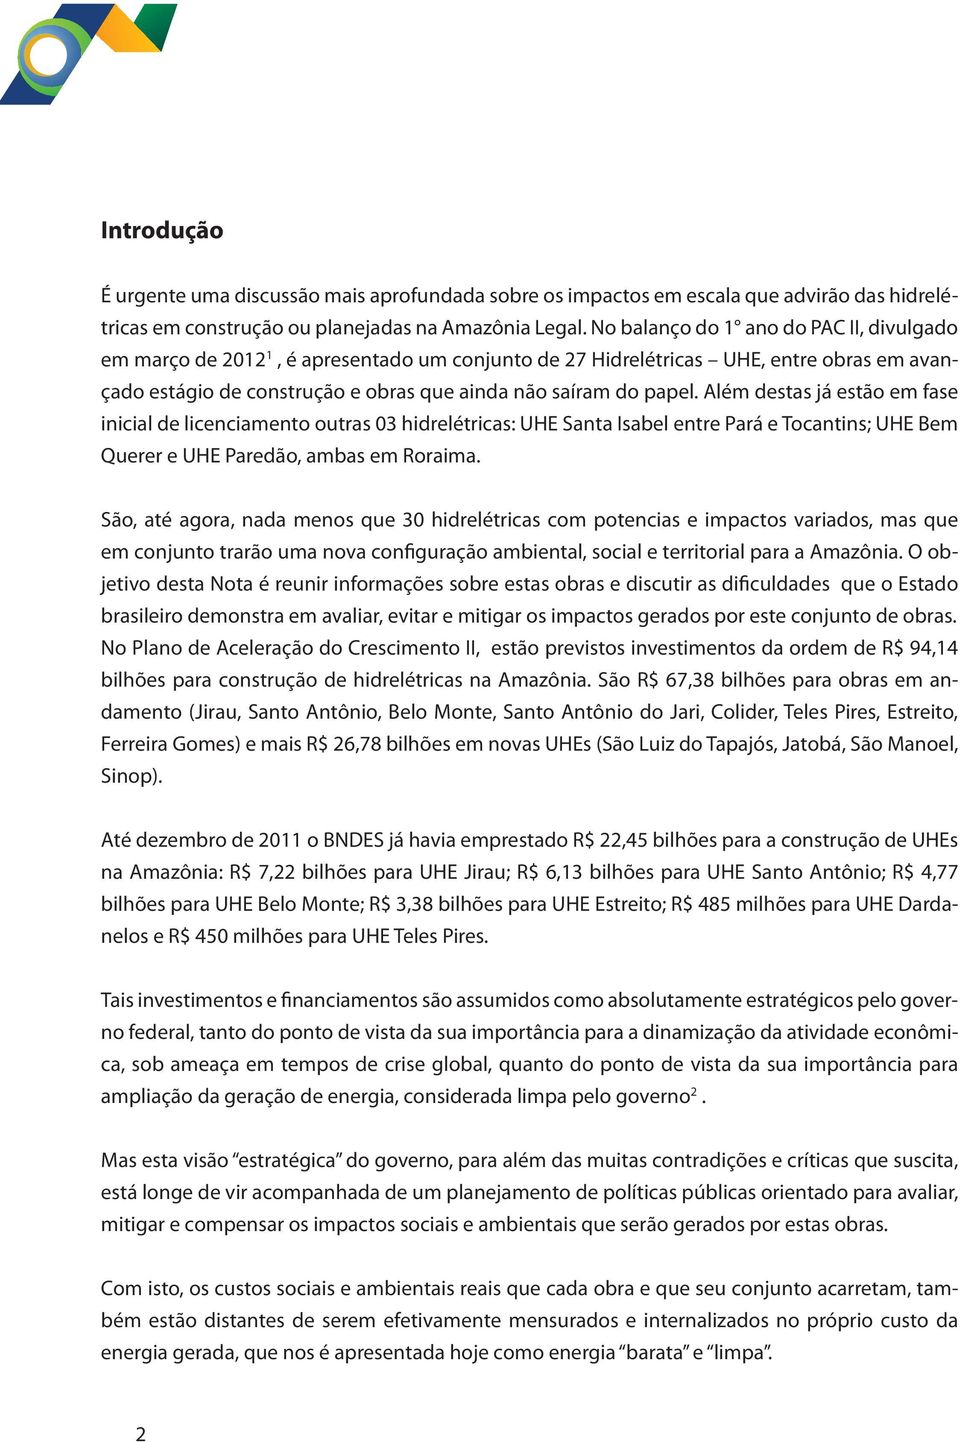 Além destas já estão em fase inicial de licenciamento outras 03 hidrelétricas: UHE Santa Isabel entre Pará e Tocantins; UHE Bem Querer e UHE Paredão, ambas em Roraima.